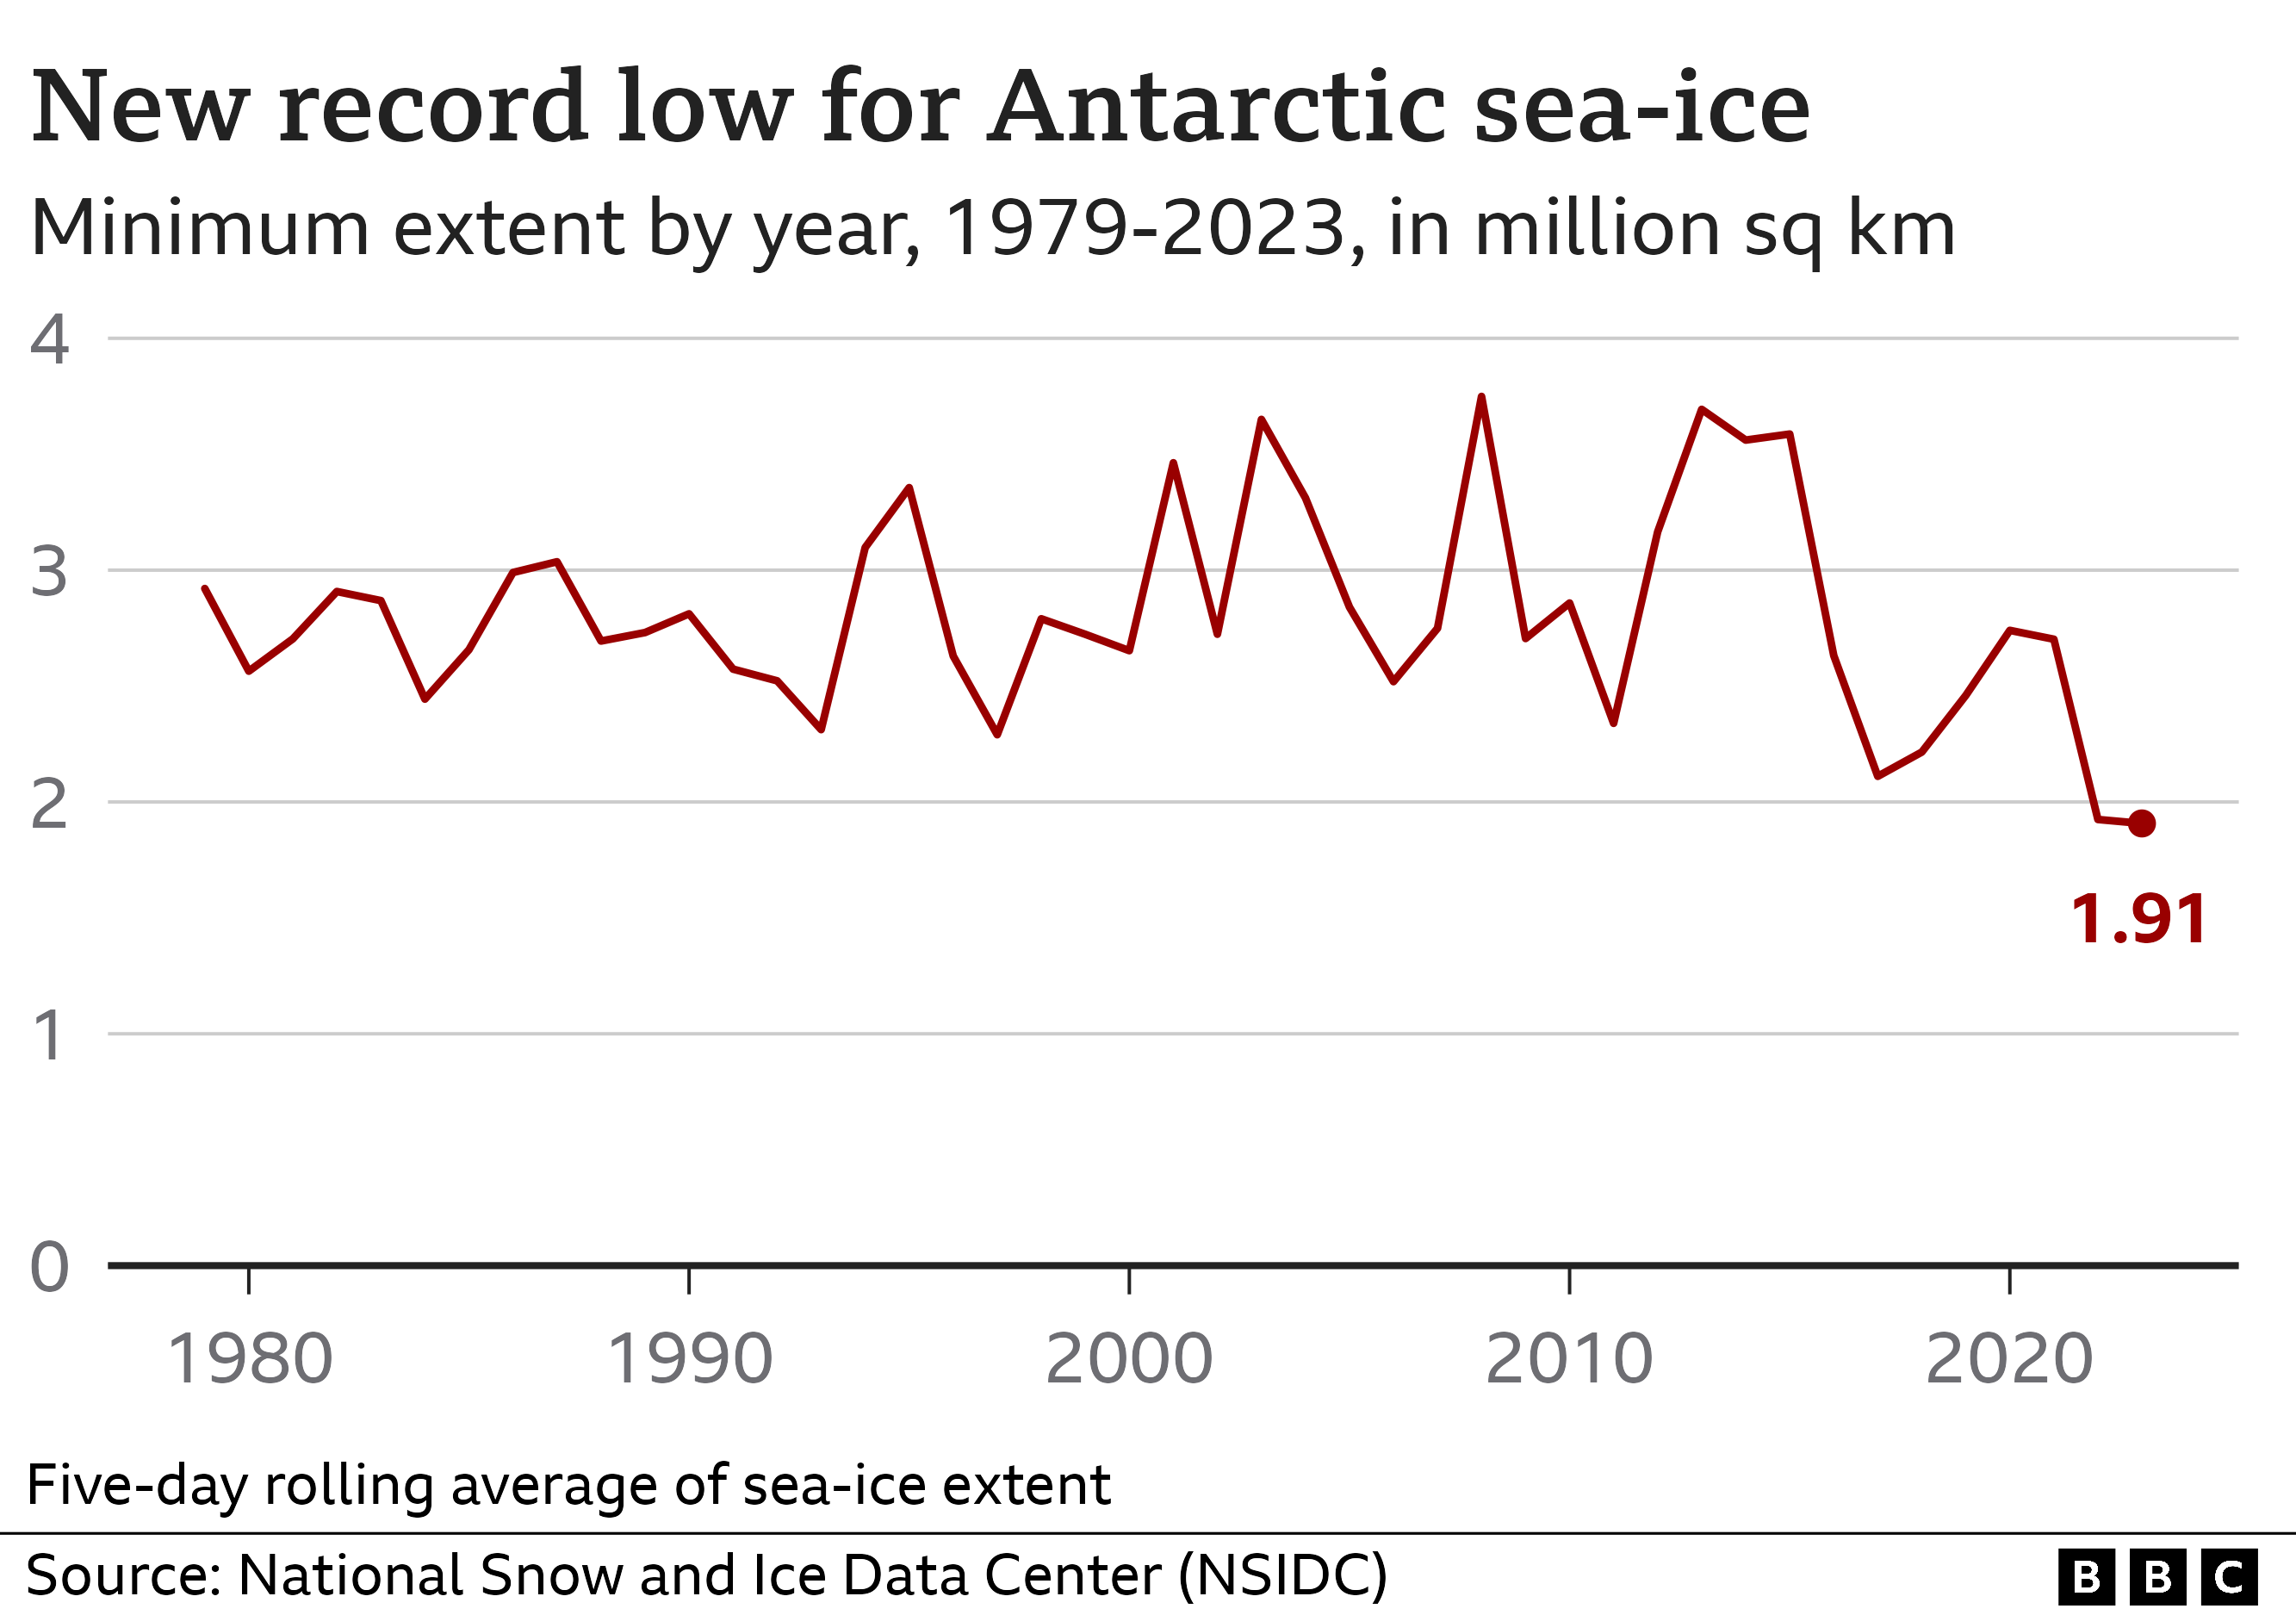 Grafico a linee che raffigura il punto più basso del ghiaccio marino misurato ogni anno dal 1979 al 2023. Sebbene la linea fluttui considerevolmente, negli ultimi anni si nota una leggera tendenza al ribasso che si conclude con un nuovo record stabilito nel 2023 a 1,91 milioni di chilometri quadrati